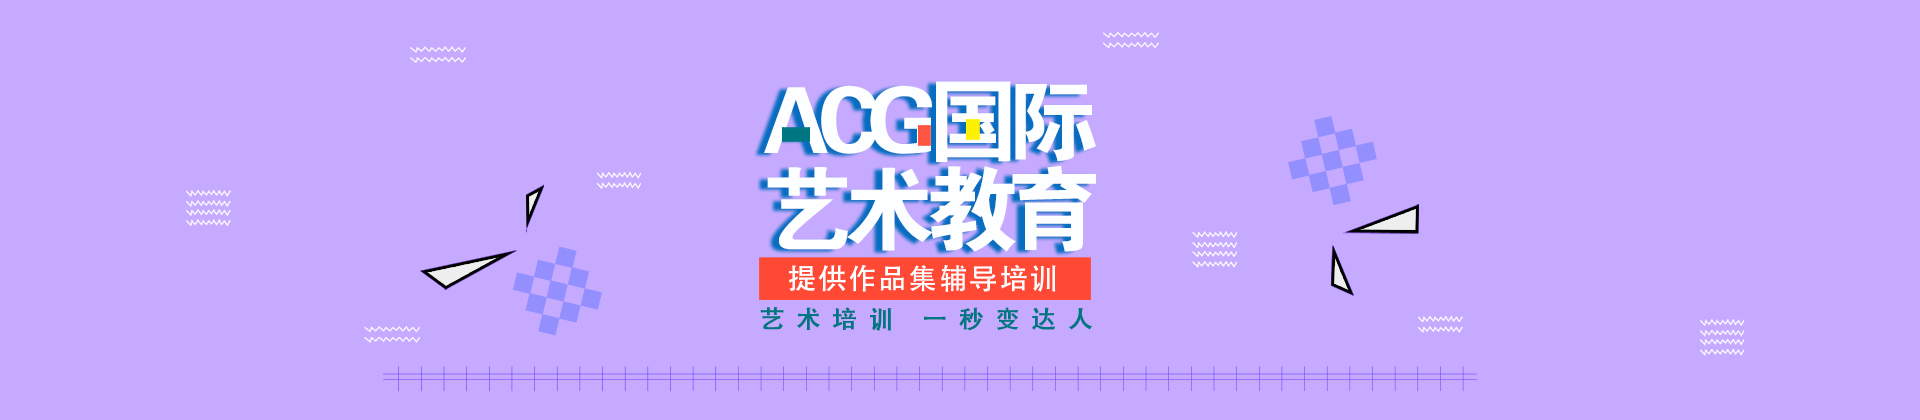 郑州ACG艺术教育